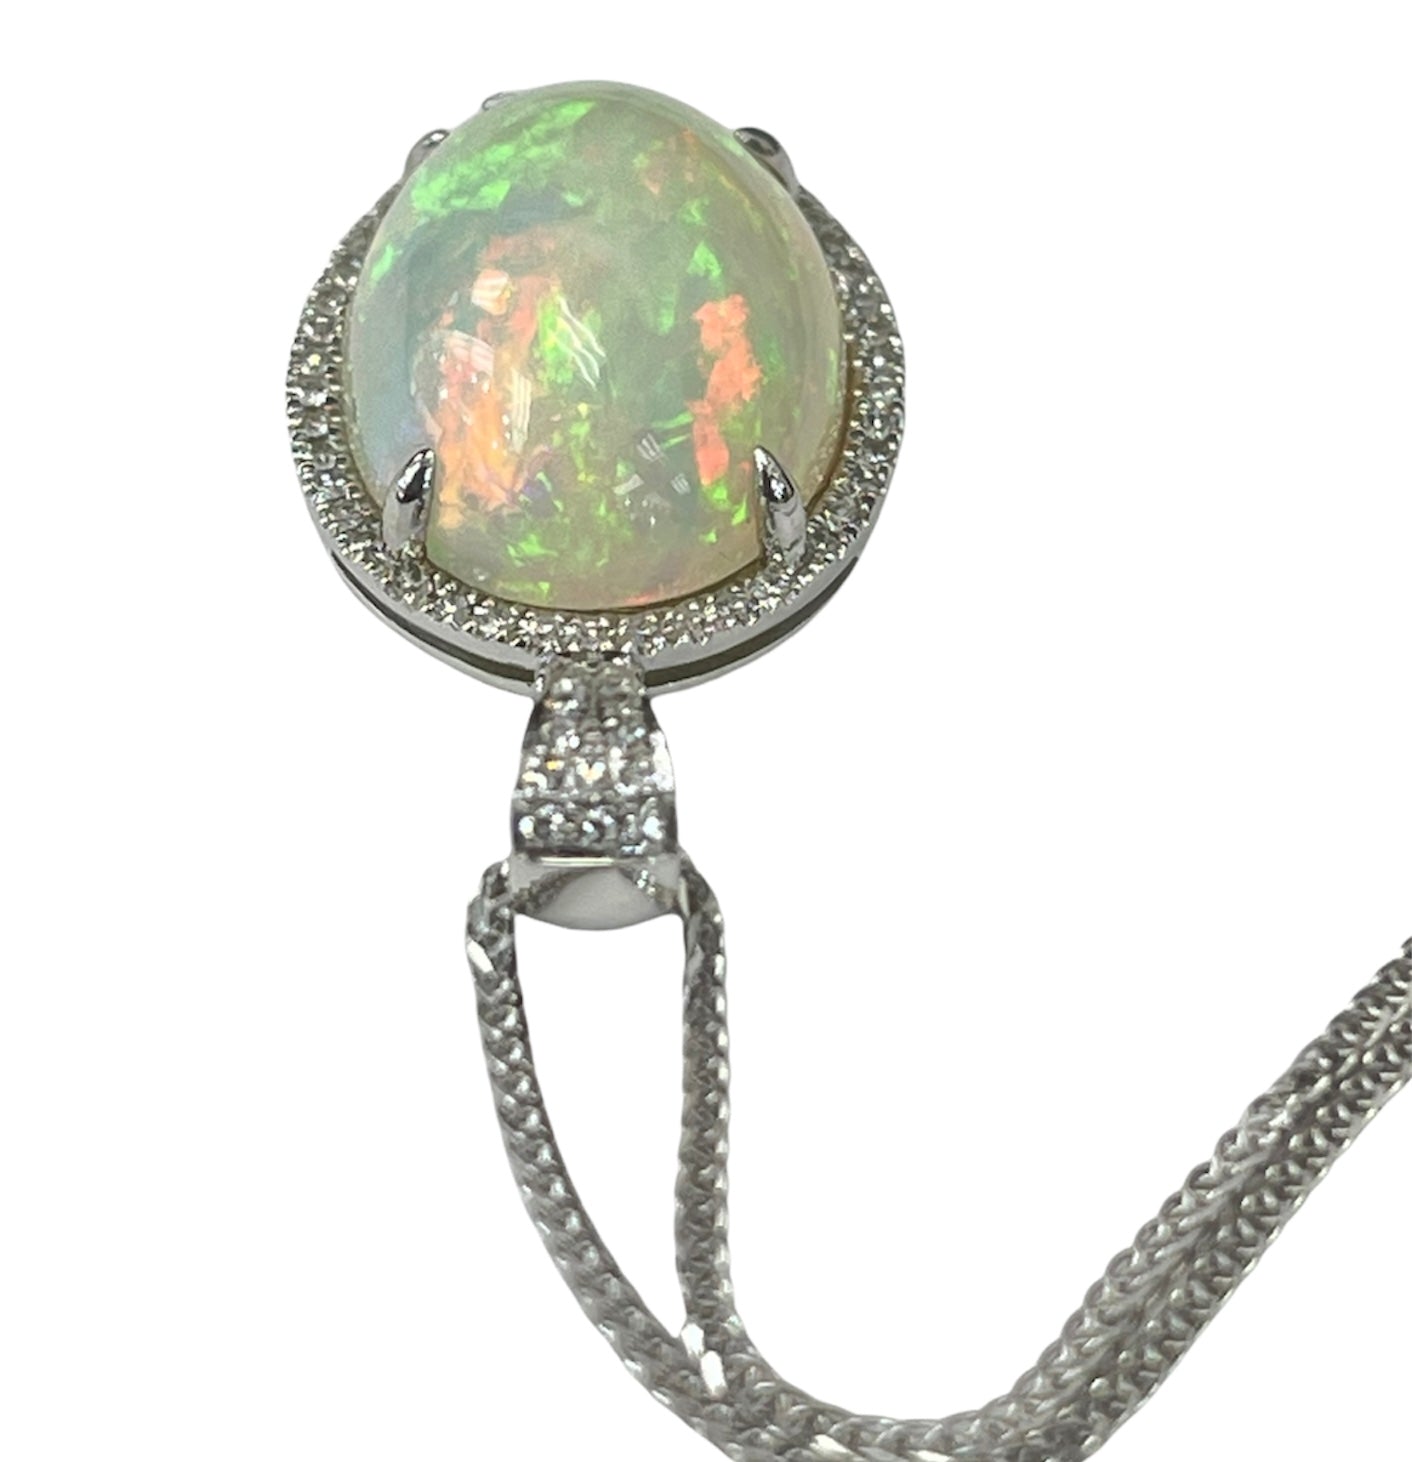 Opal Gem Oval Diamond Pendant Necklace White Gold 14kt